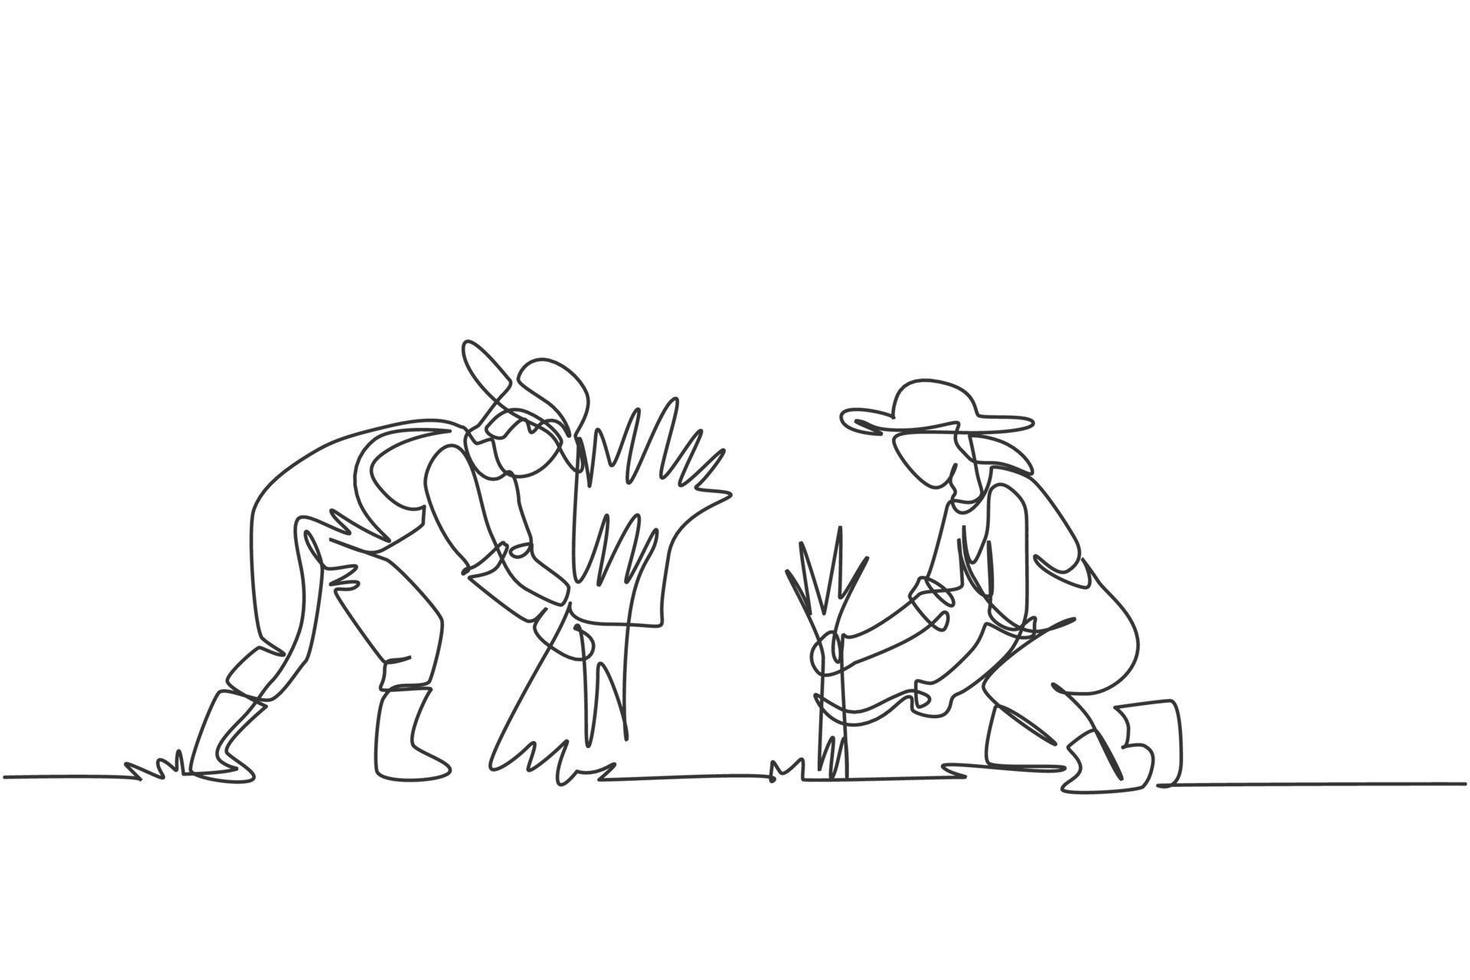 El dibujo de una sola línea de una pareja de agricultores estaba cosechando arroz y también había arroz amarrado. concepto mínimo de desafío agrícola. Ilustración de vector gráfico de diseño de dibujo de línea continua.